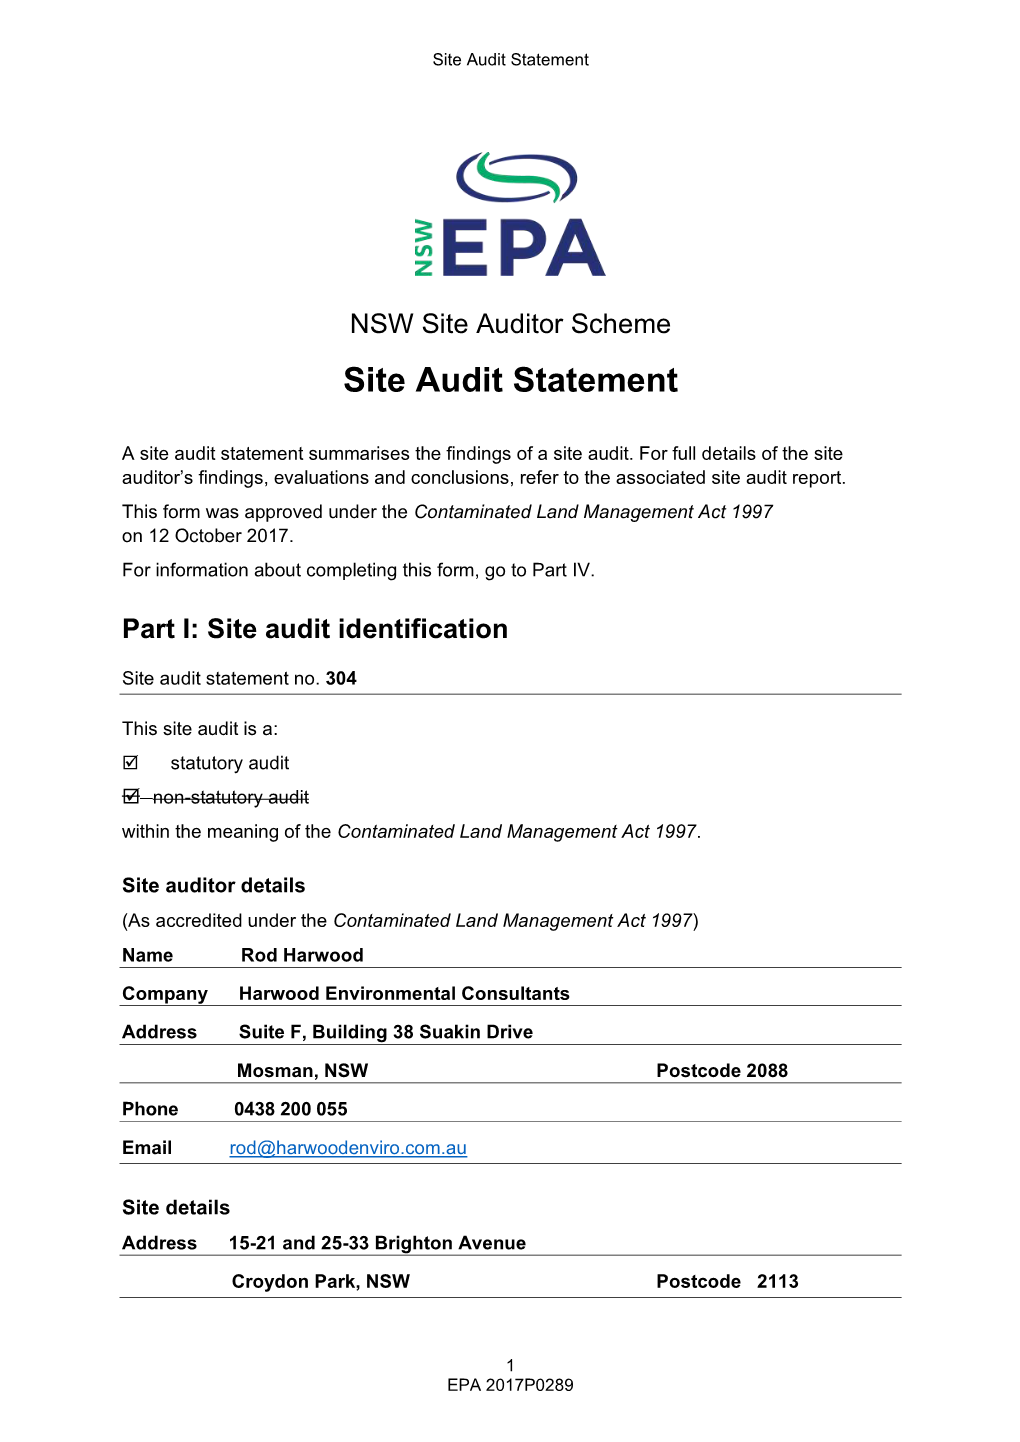 NSW Site Auditor Scheme Site Audit Statement